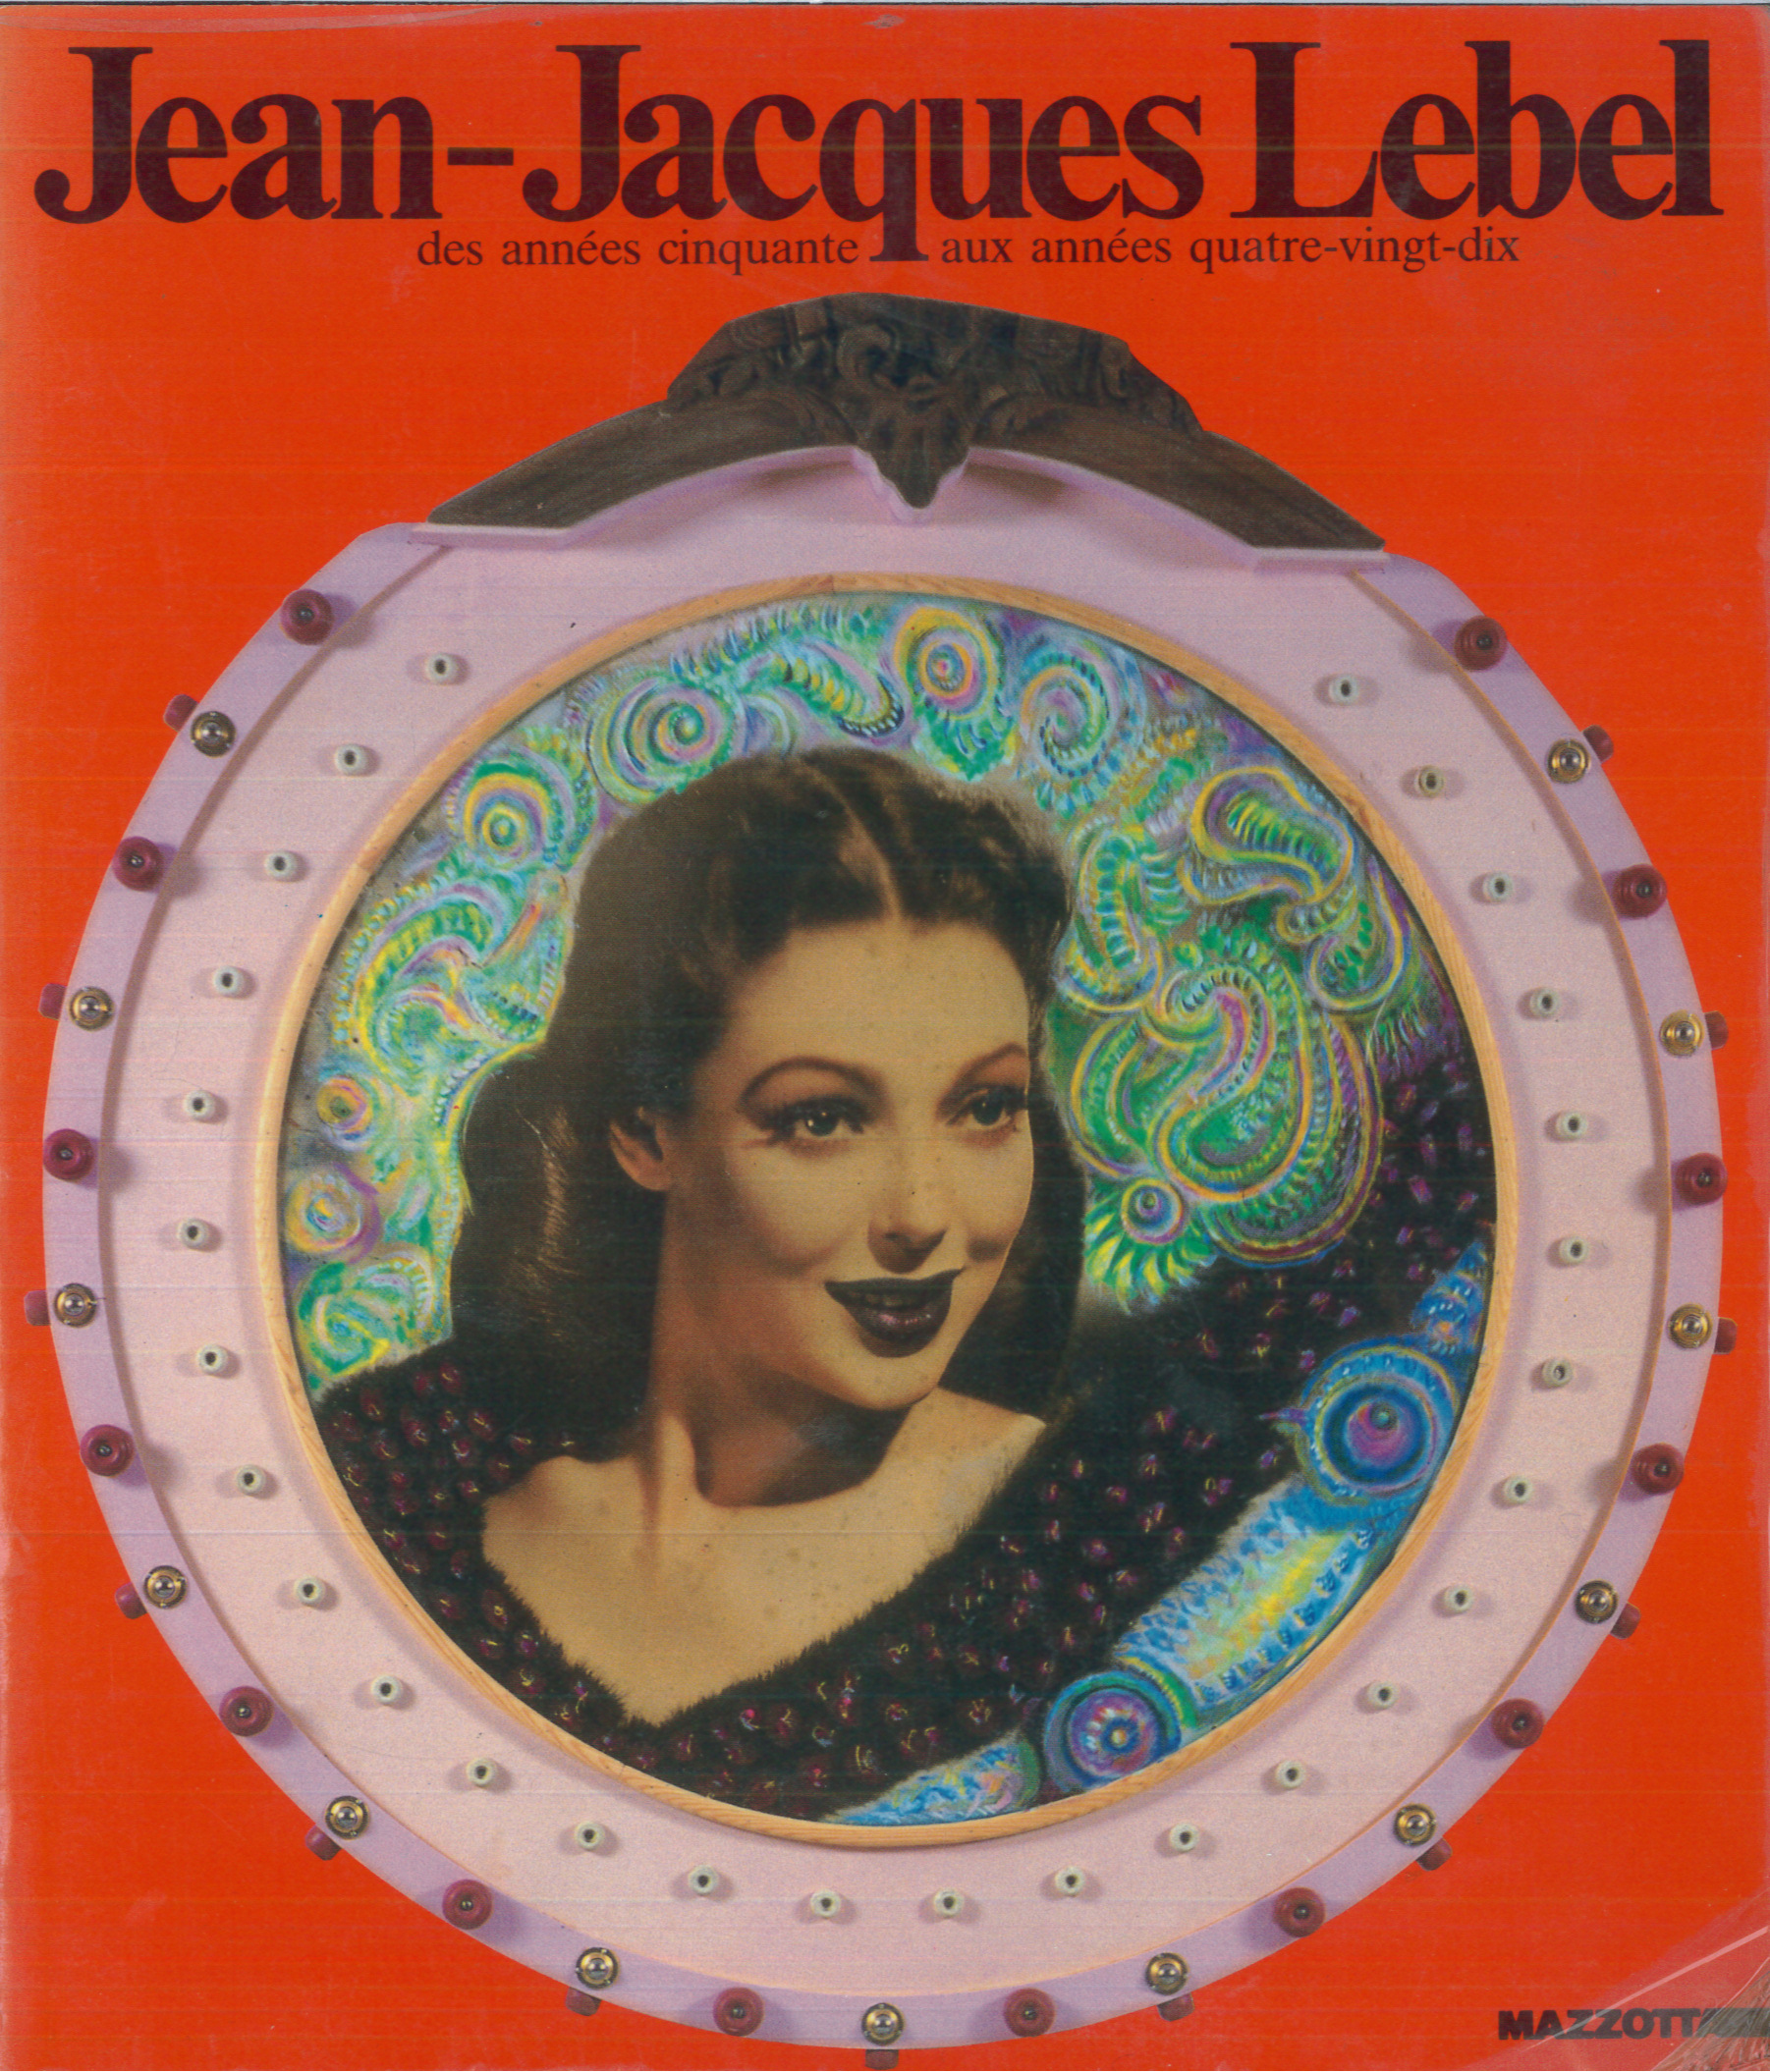 13-3-Jean-Jacques-Lebel-des-annees-cinquante-aux-années-quatre-vingt-dix-Paris-Galerie-1900-2000-1991